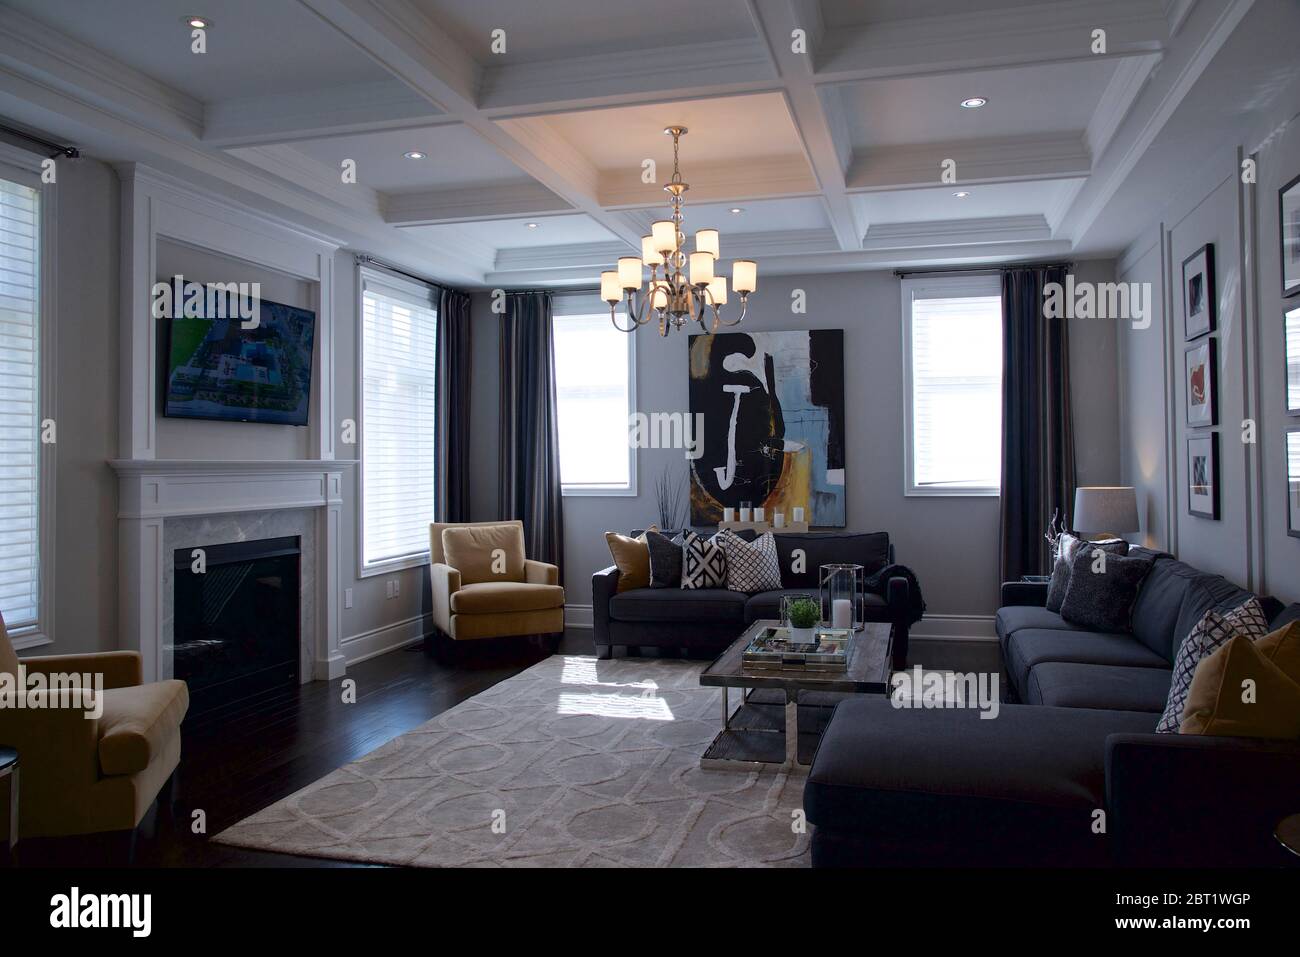 Kleinburg, Ontario / Canada - 08/31/2019: Livingroom Interior Home architettura - Foto del soggiorno - Fotografia di interni. Foto Stock